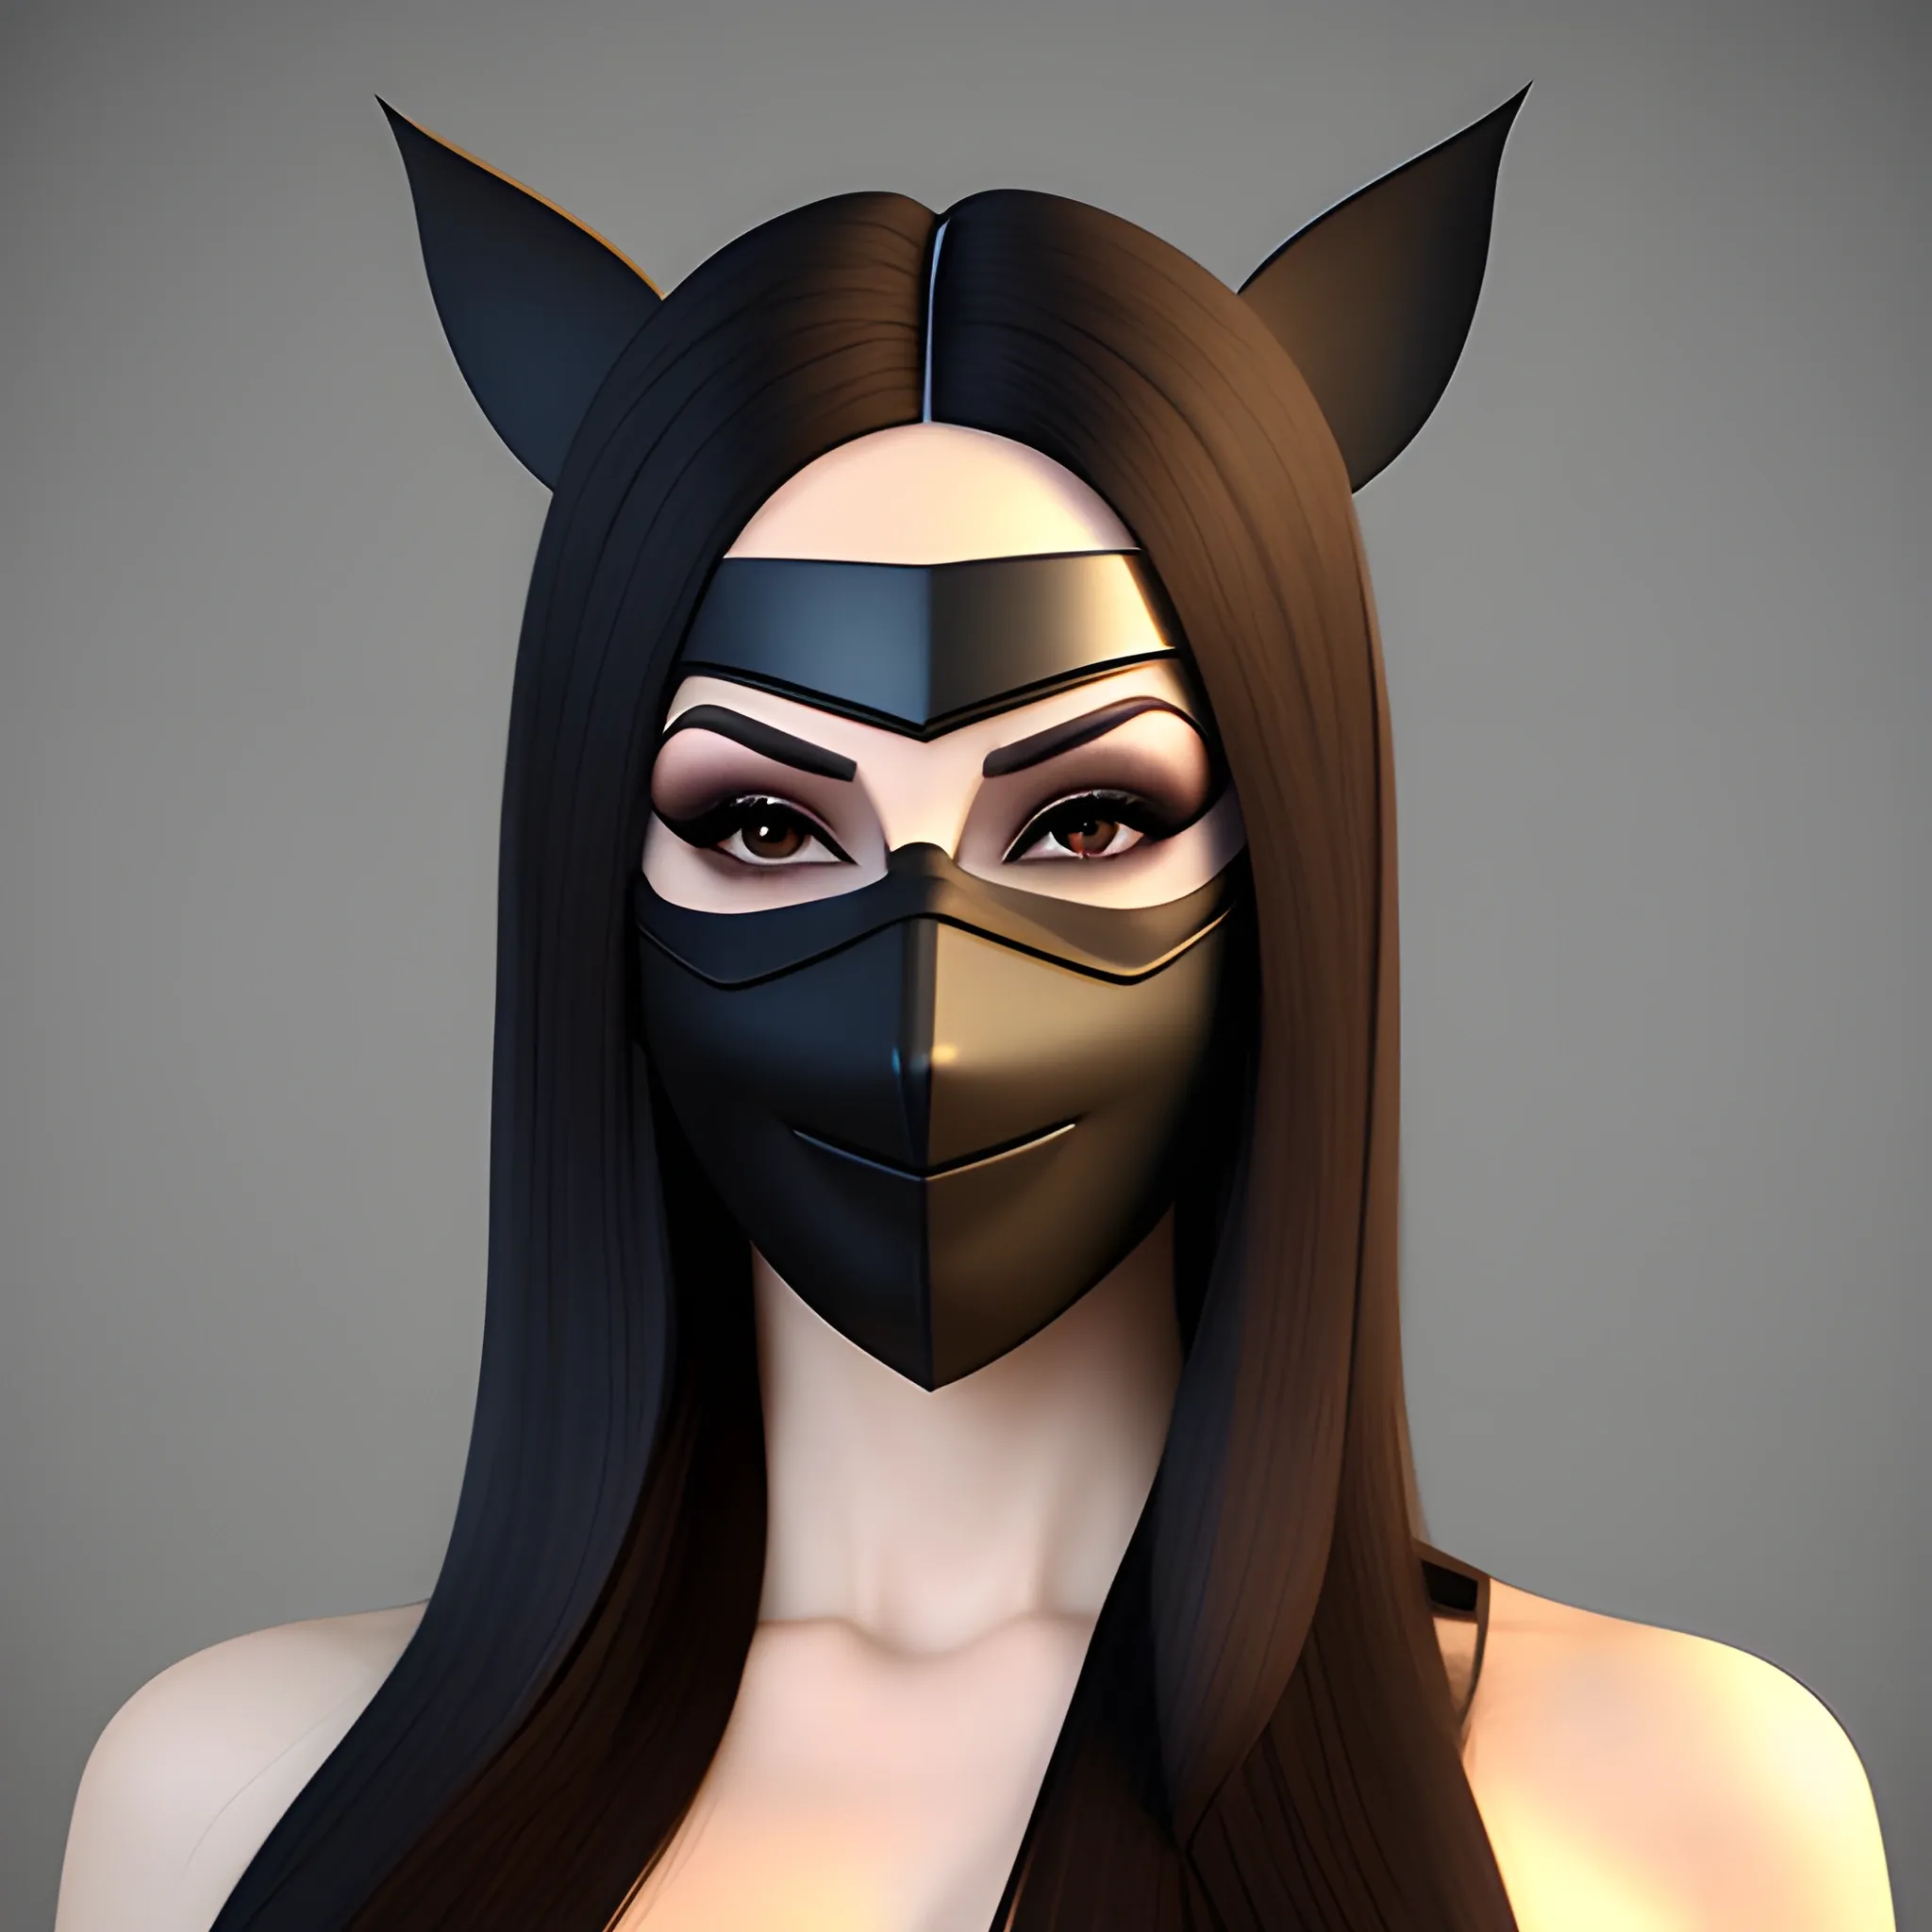 Beautiful girl wearing a mask, 3D